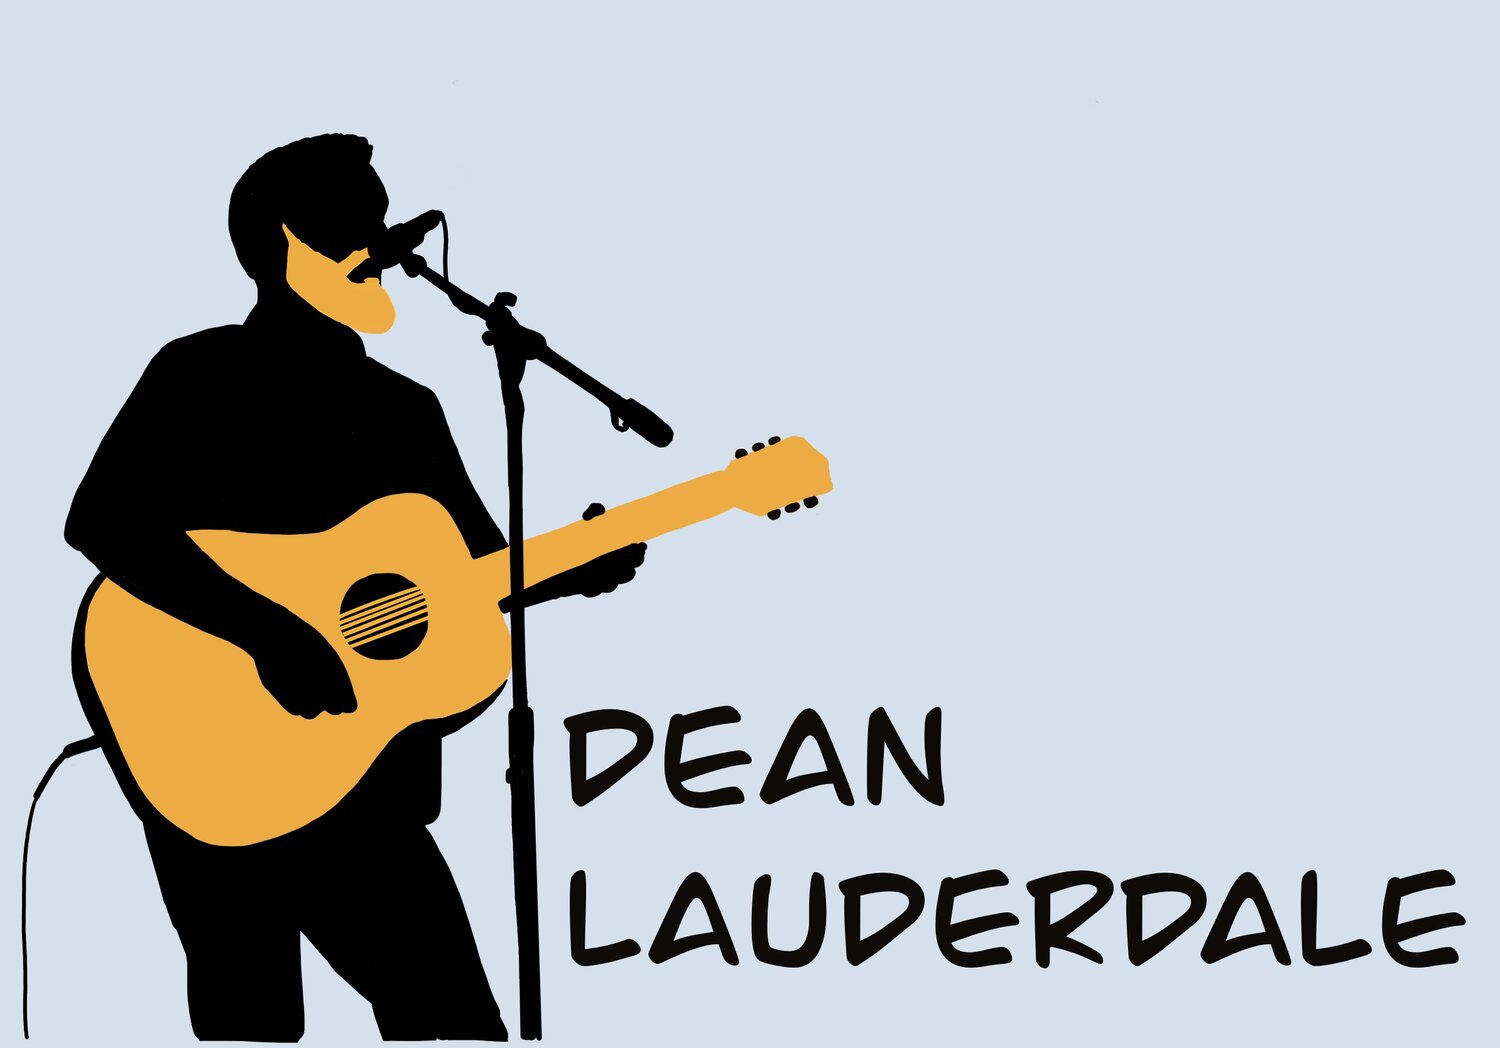 Dean Lauderdale